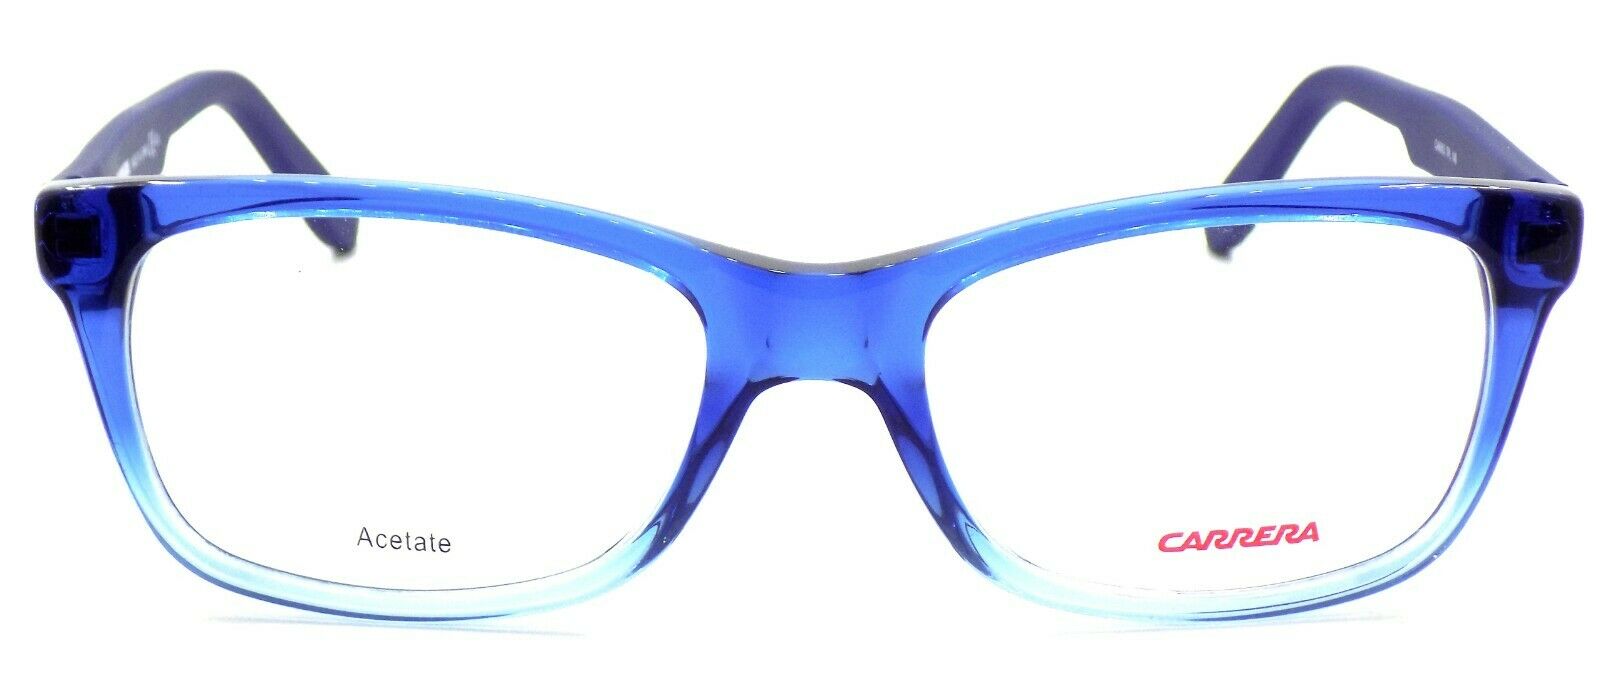 2-Carrera CA6653 TPL Unisex Eyeglasses Frames 52-18-140 Shaded Blue + CASE-827886093717-IKSpecs